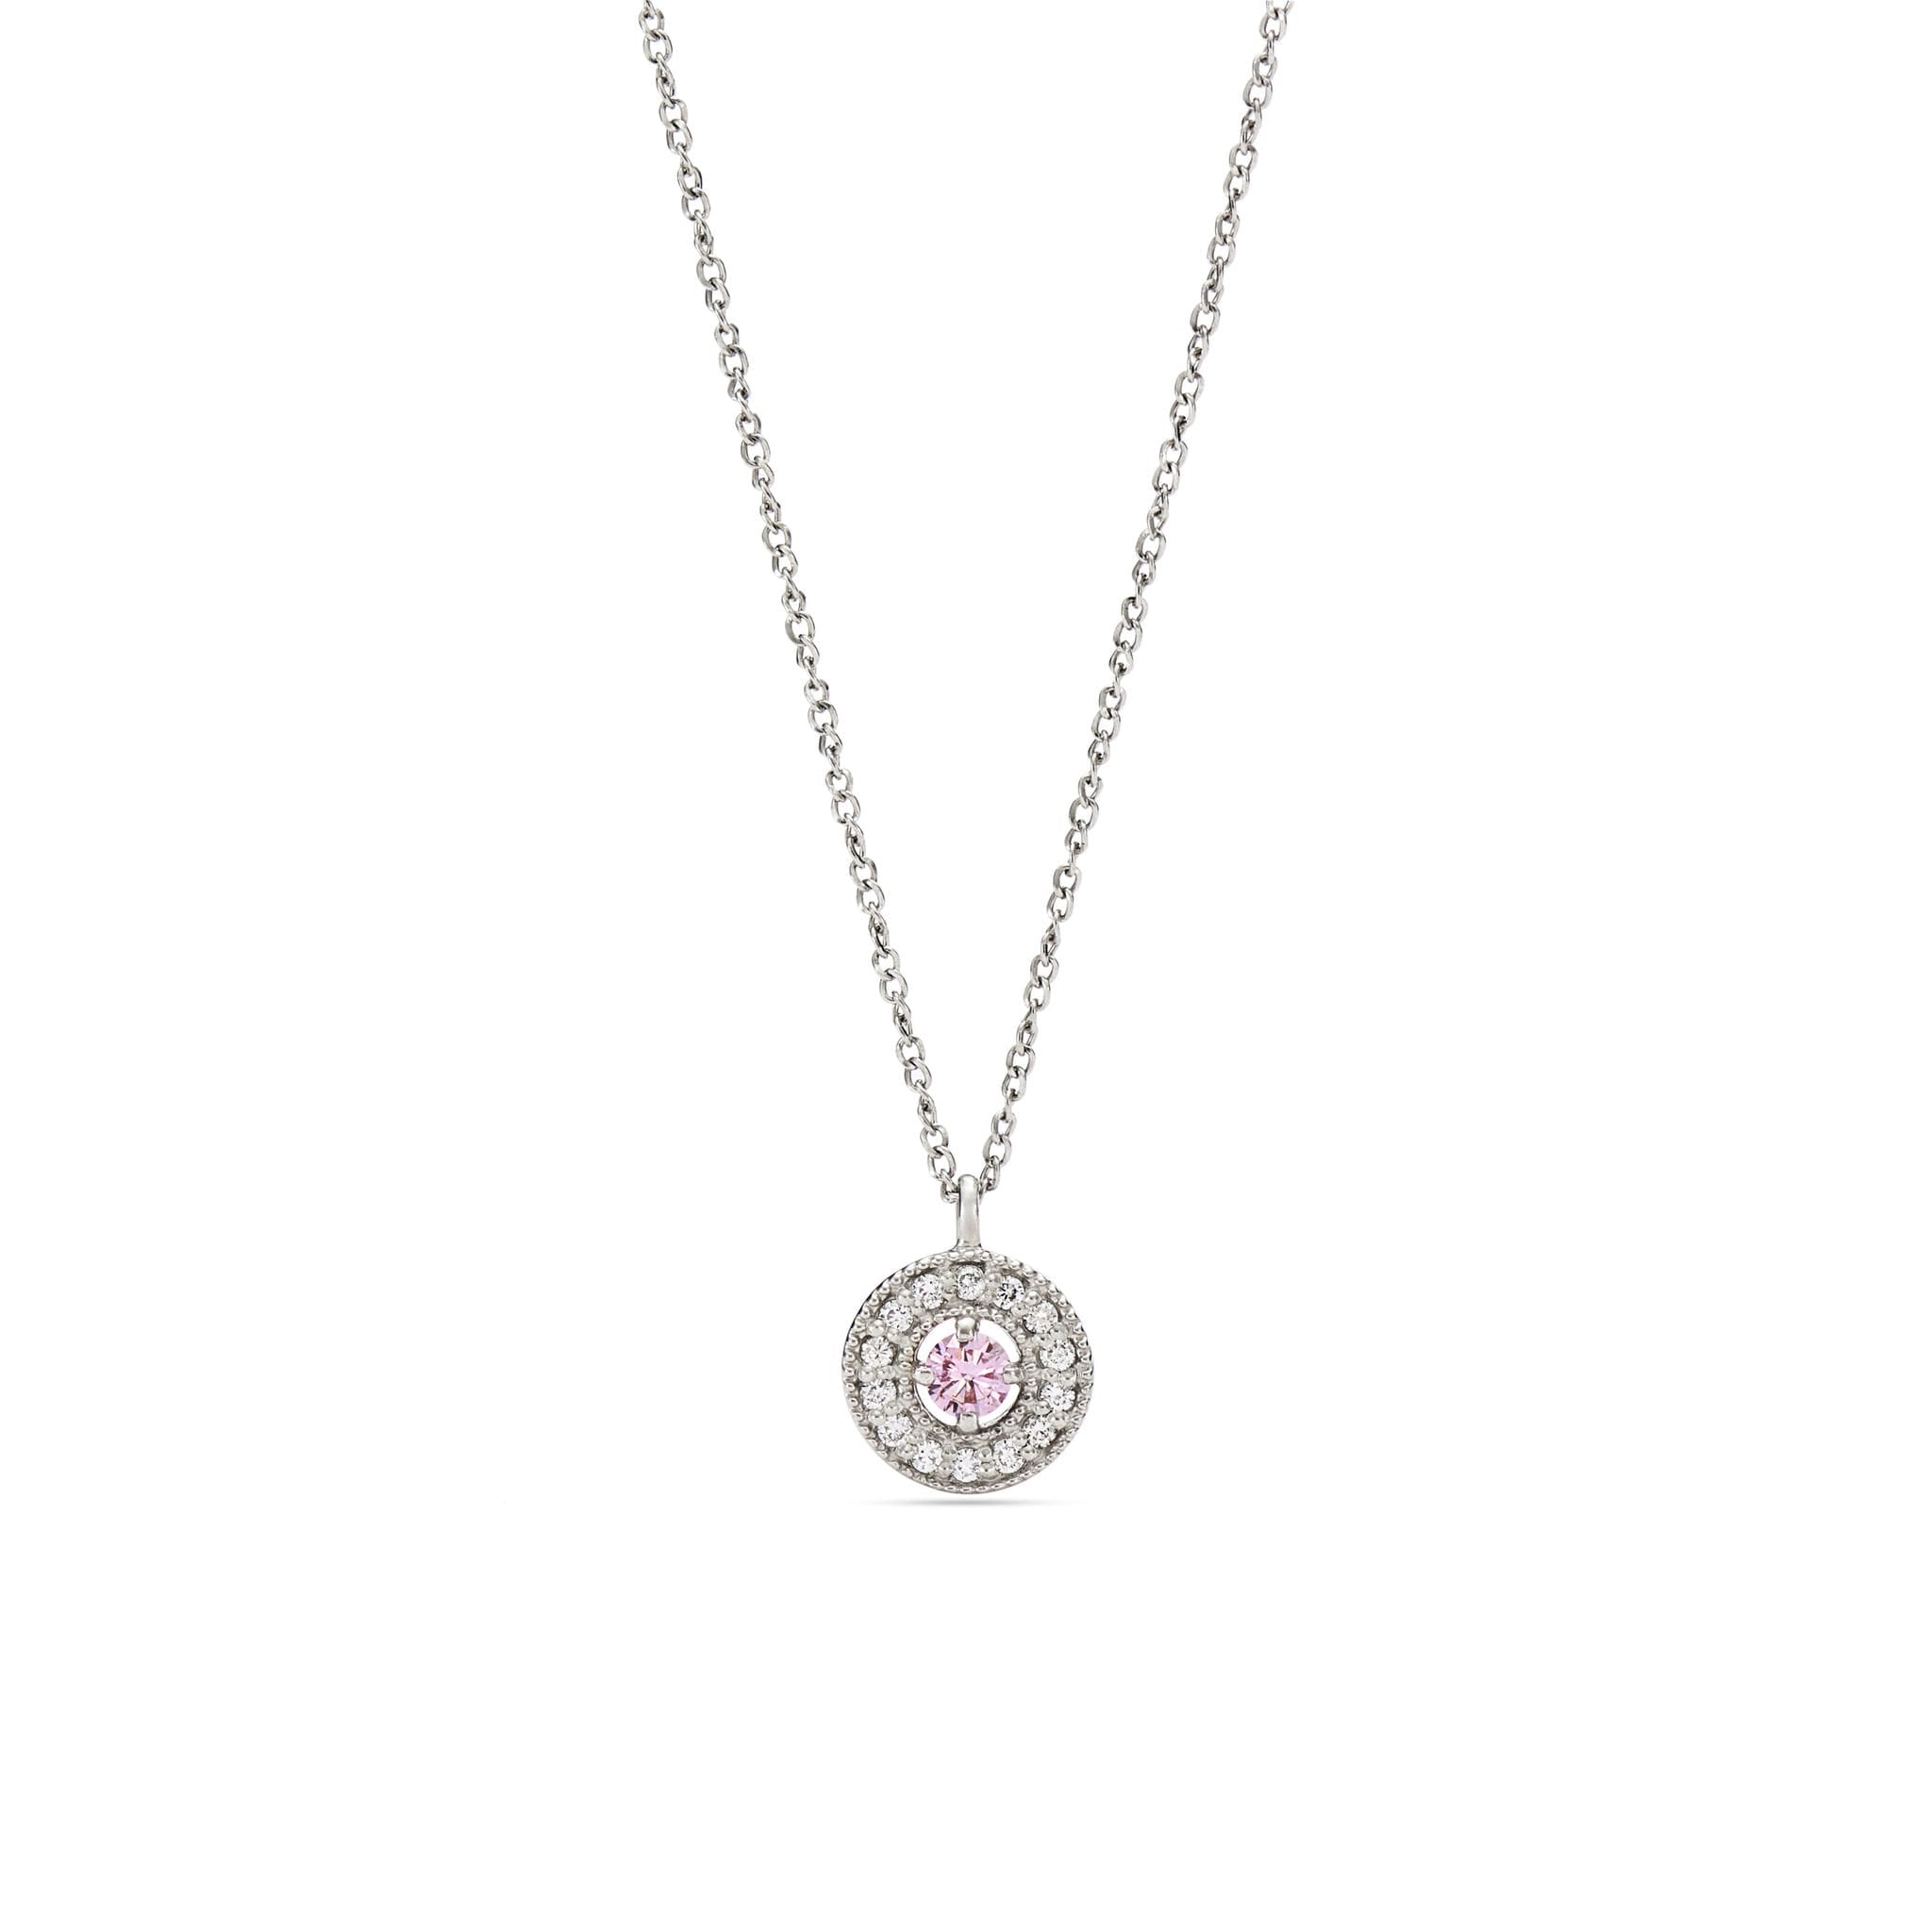 ナチュラル(天然)ピンク  ダイヤモンド 0.06 ペンダント・ネックレスネックレス